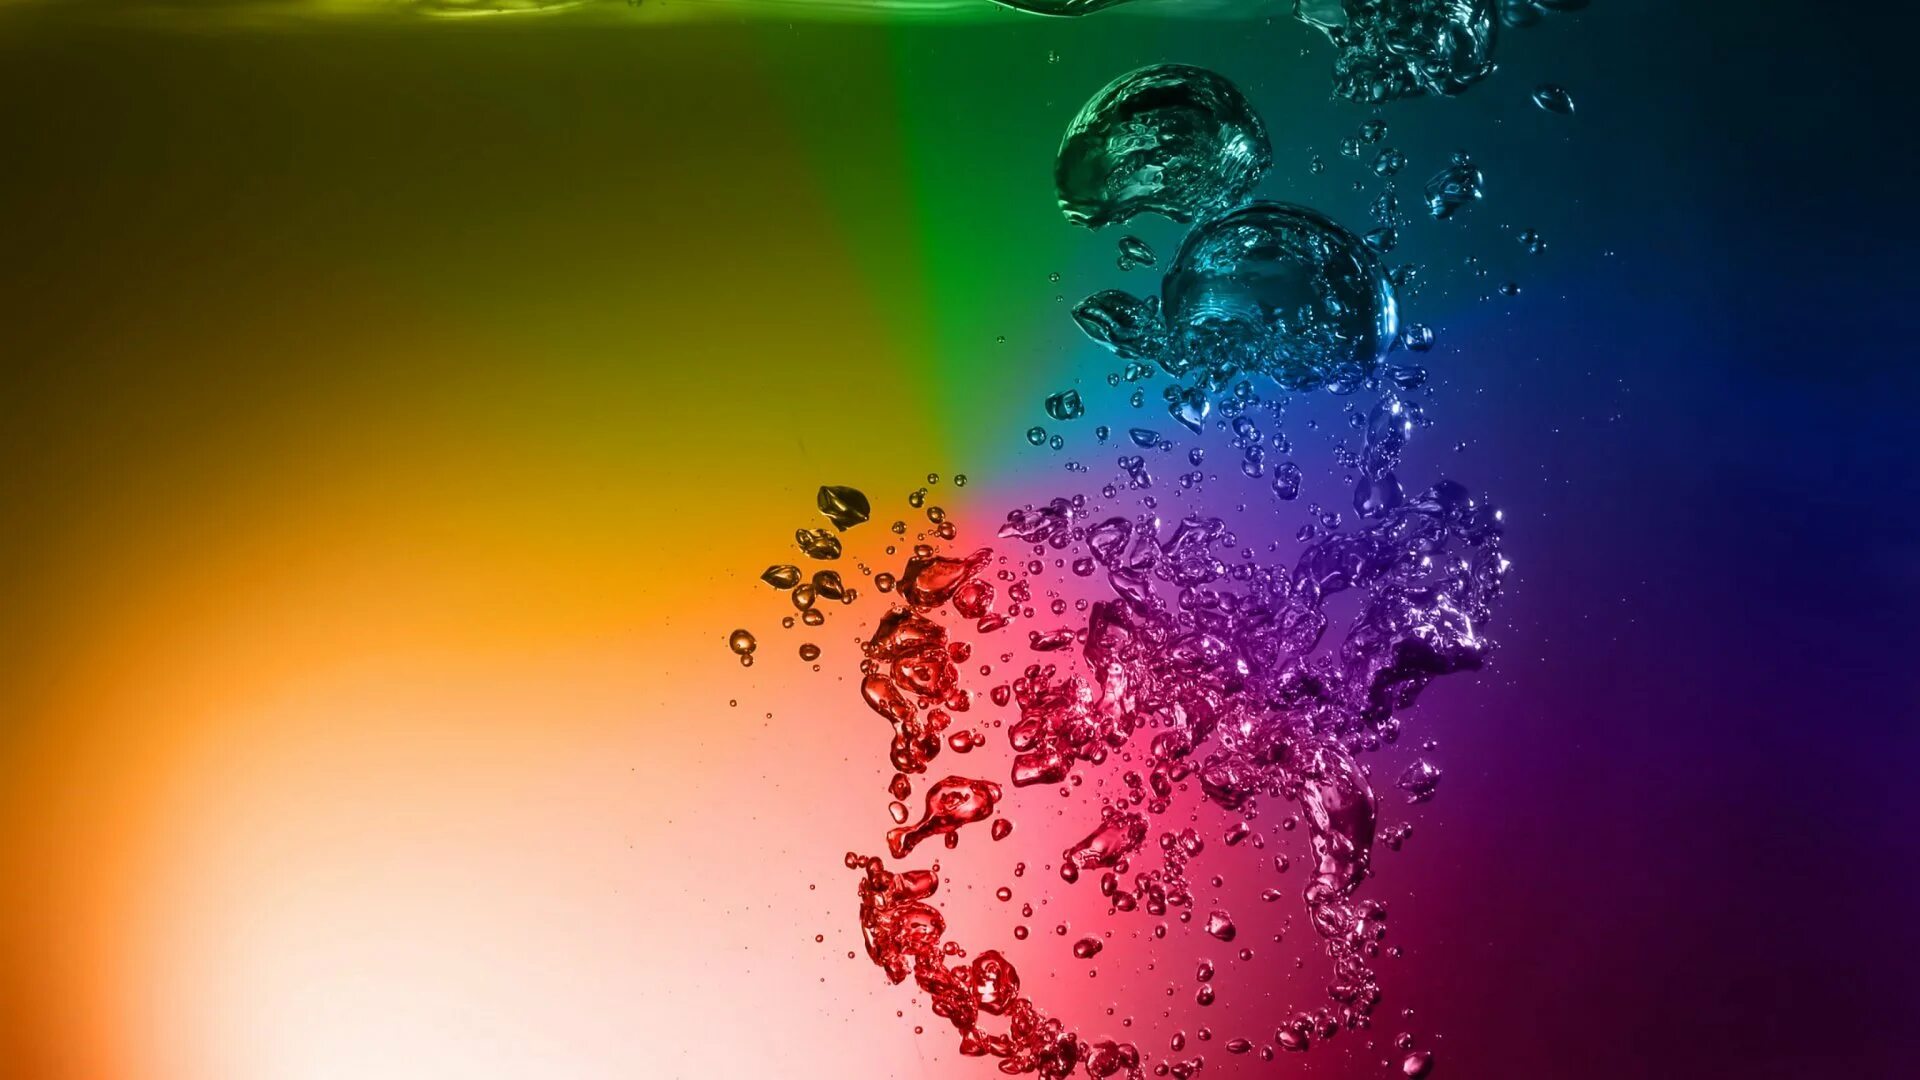 Обои на главную на телефон. Цветной в воде. Разноцветная вода. Яркие обои на андроид. Вода фон.